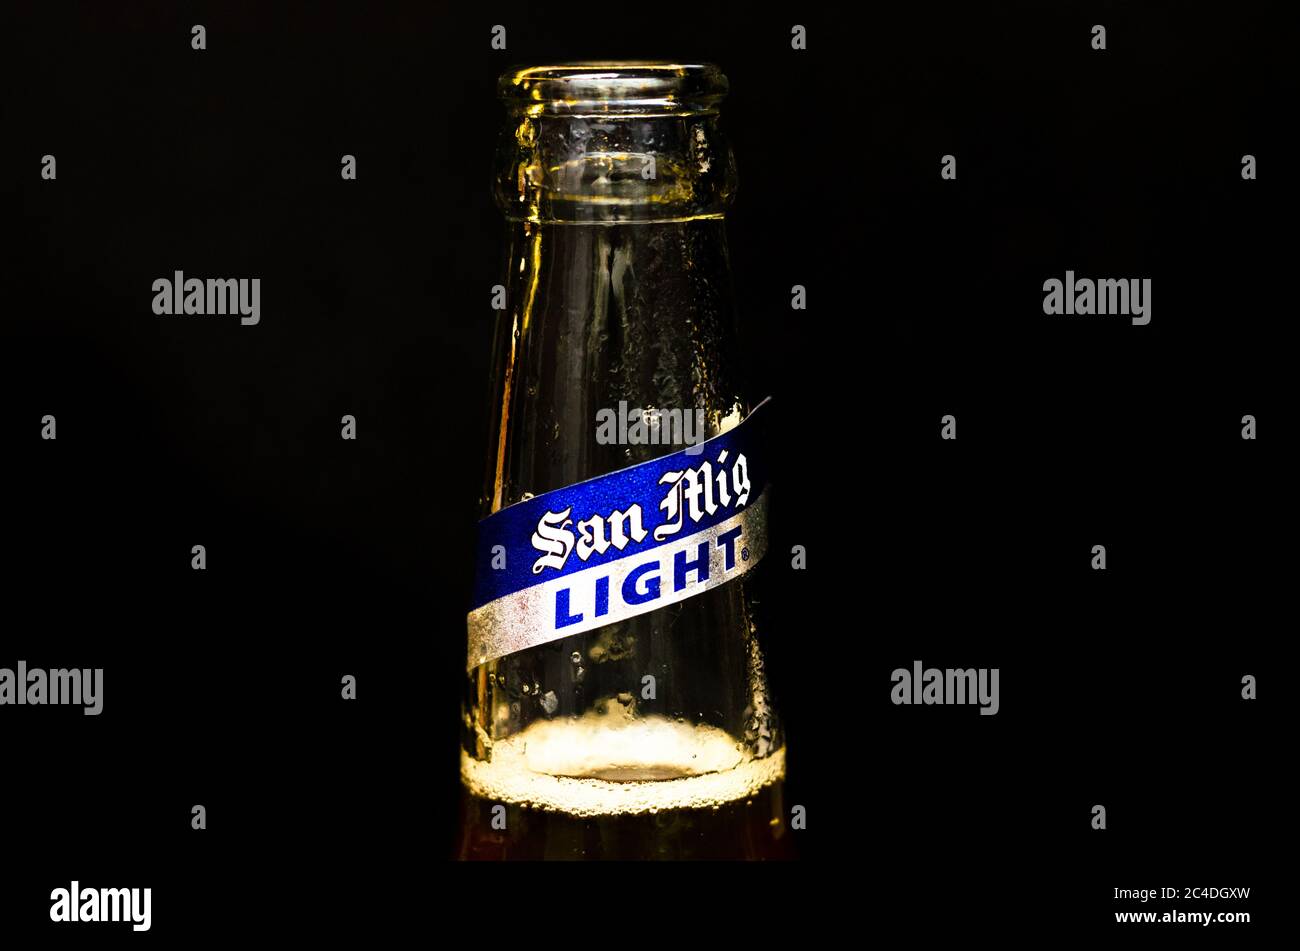 Primo piano vista della bocca della bottiglia di birra San Miguel Light con etichetta argento e blu su sfondo di marmo nero Foto Stock